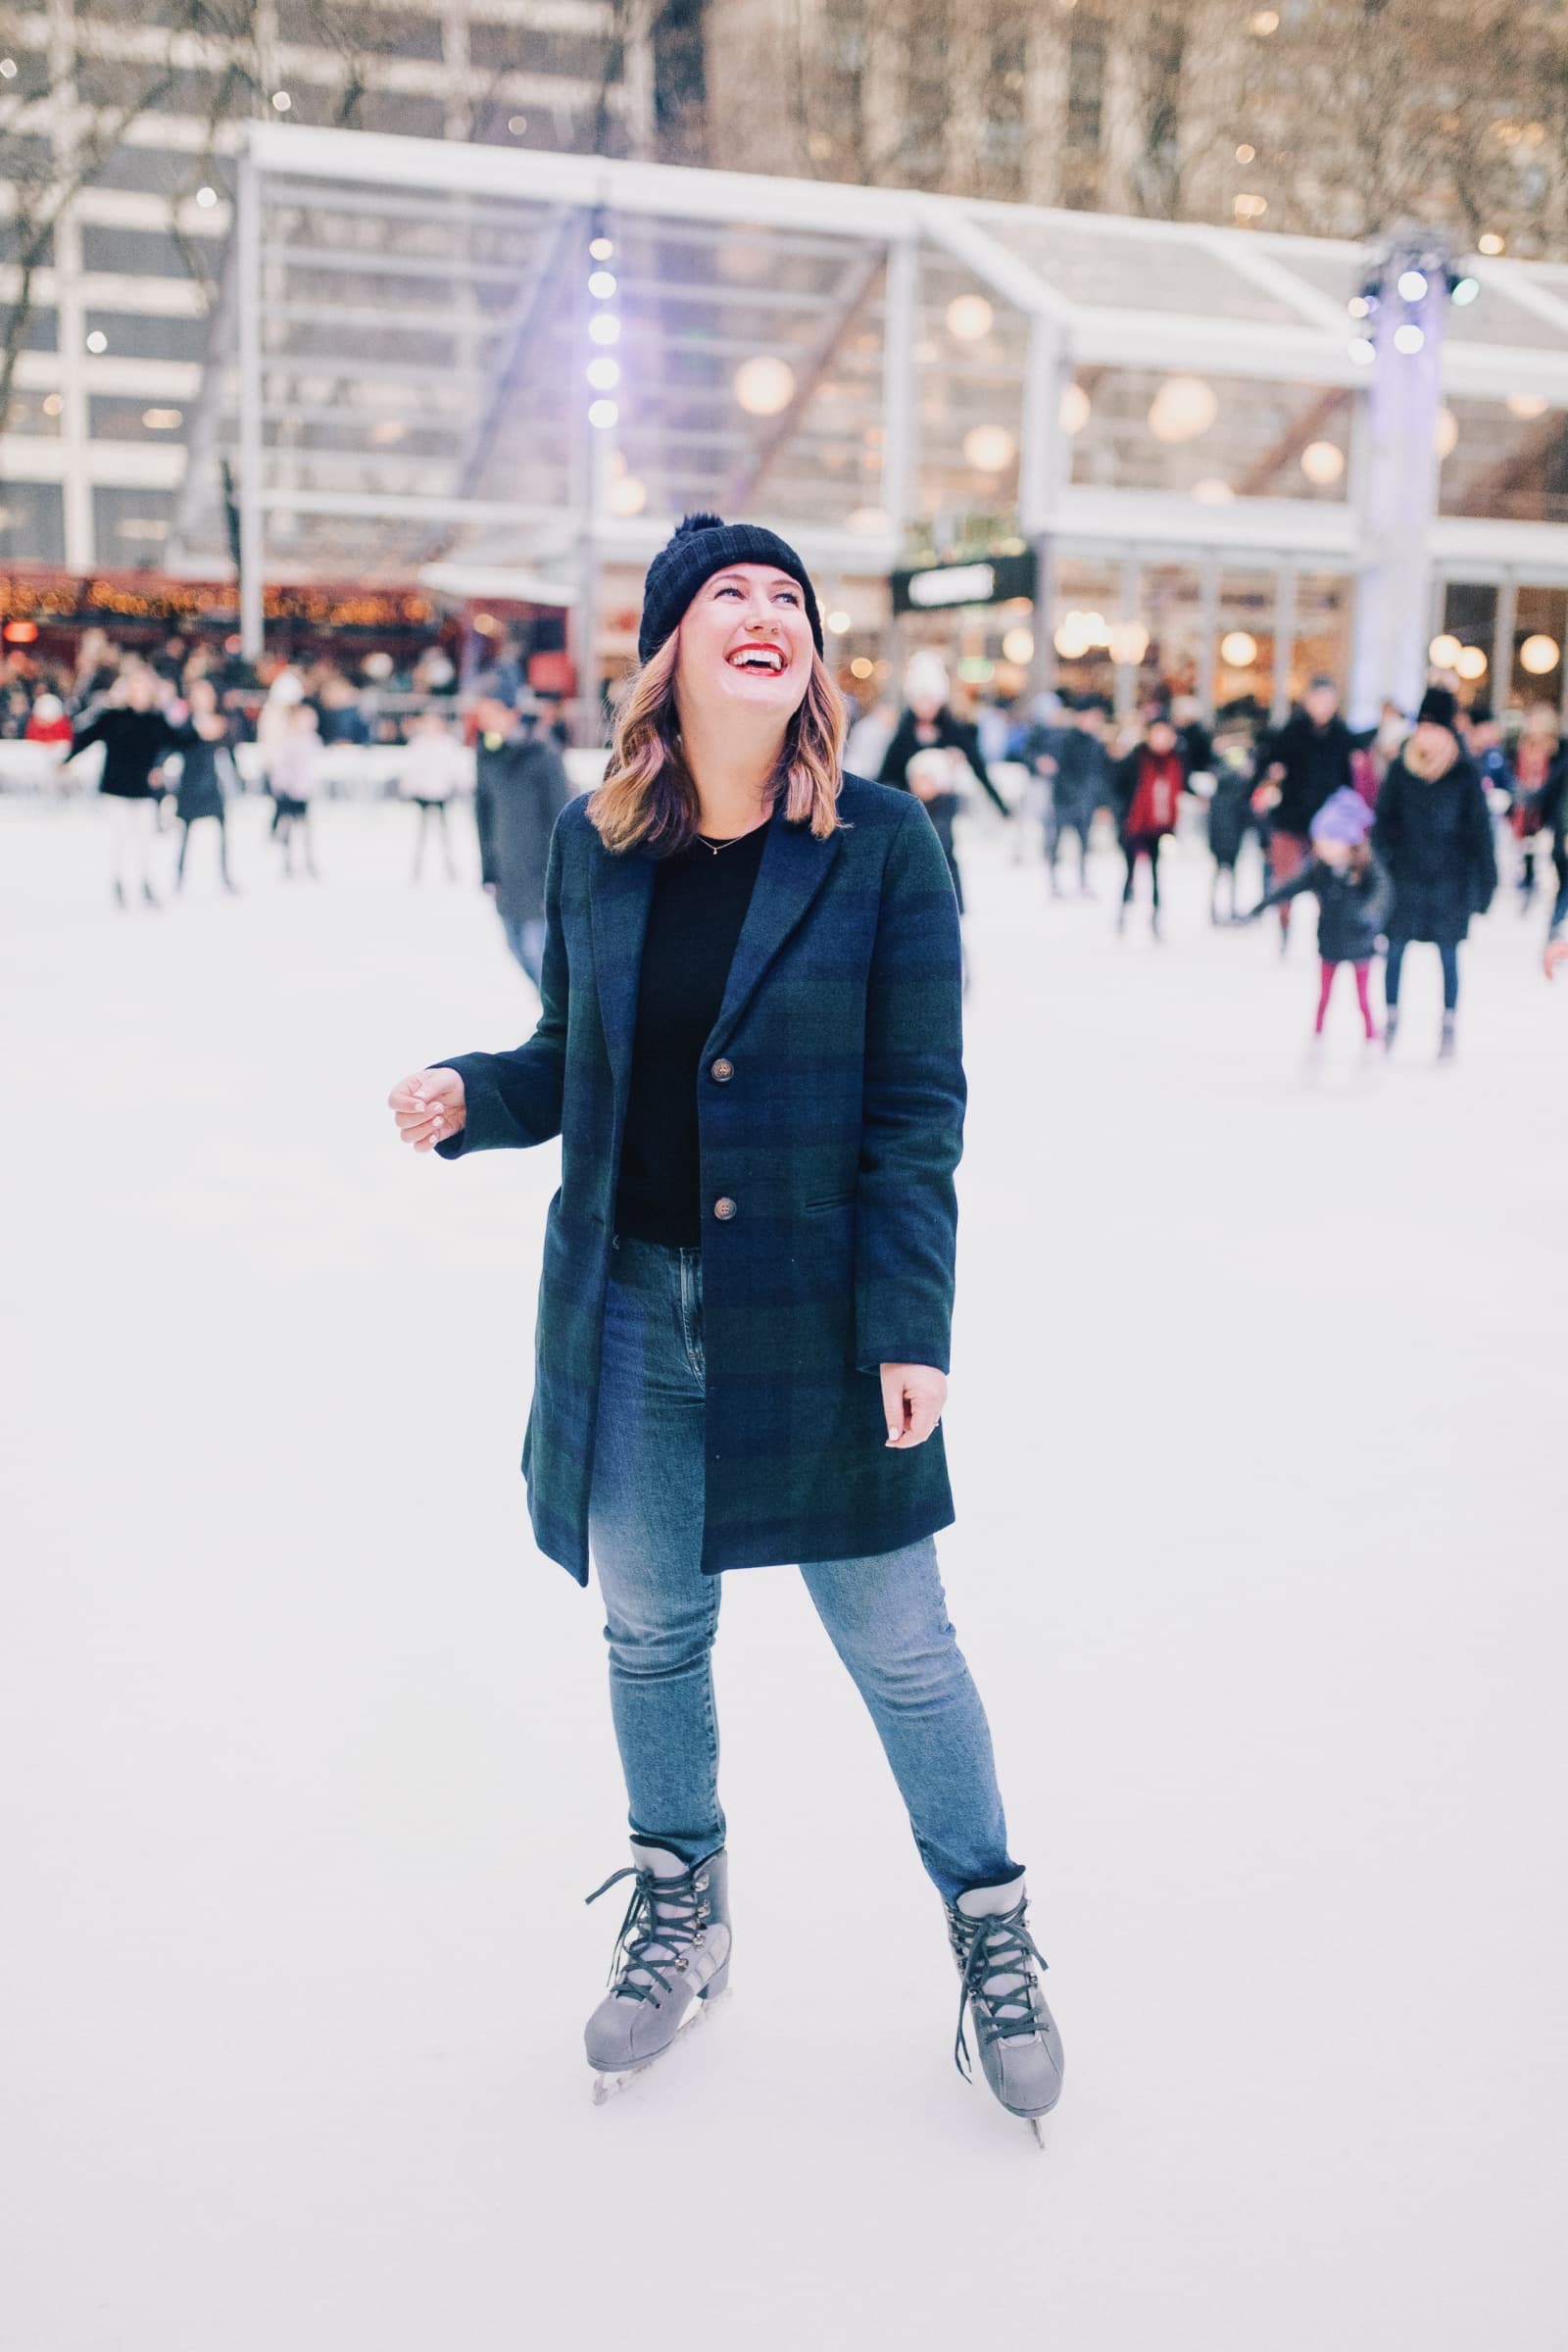 New York City Christmas Ice Skating